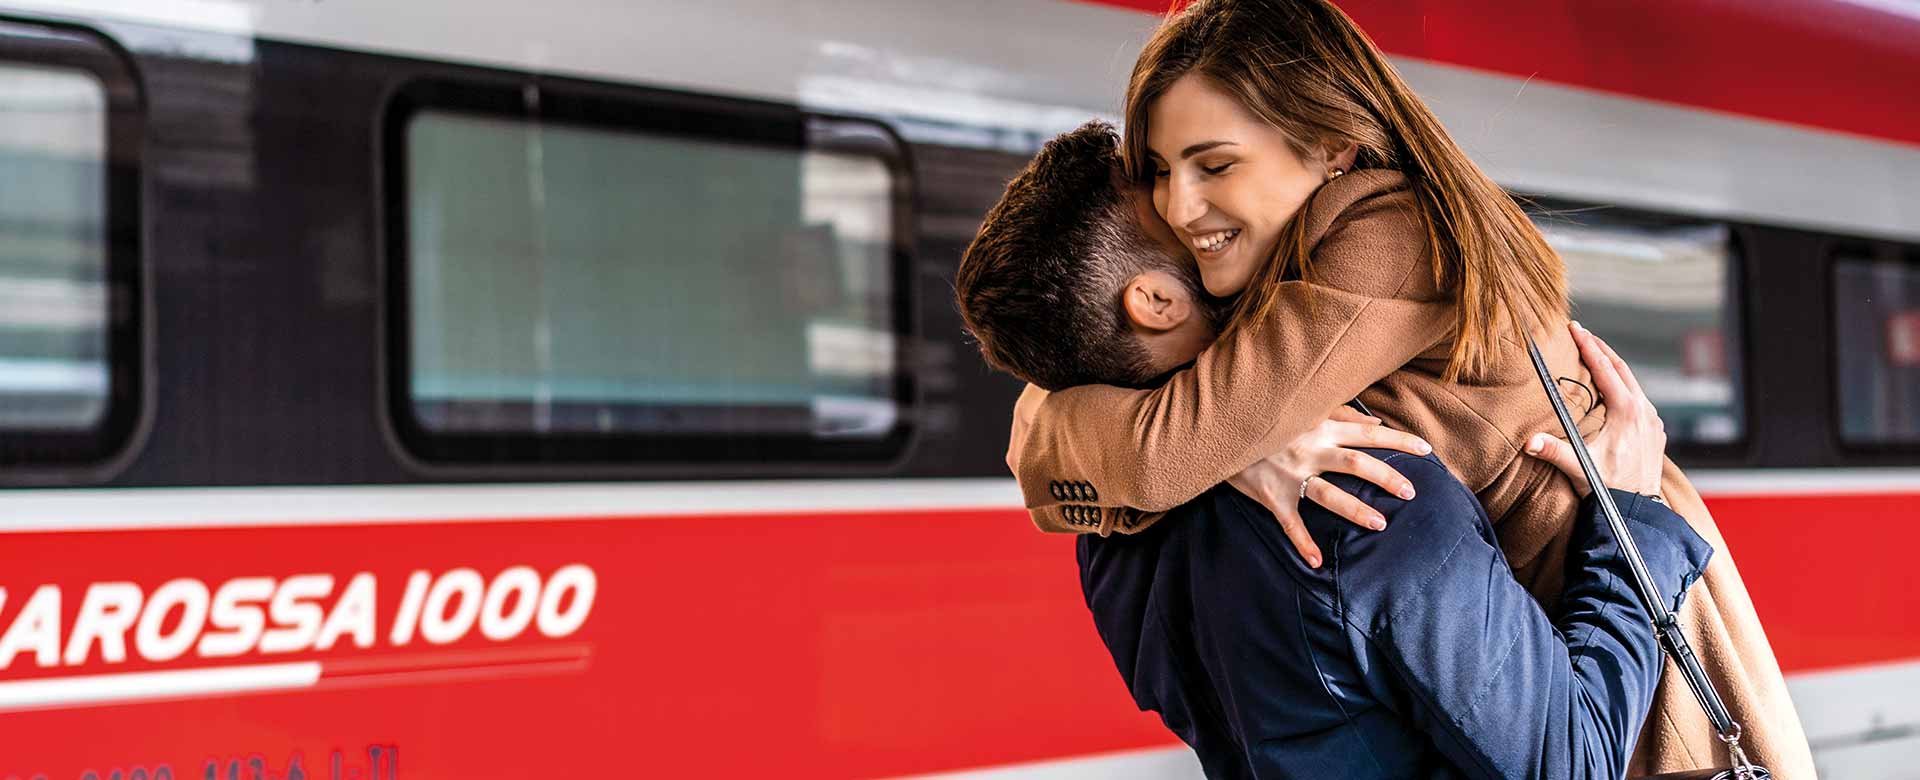 Immagine di un abbraccio, il gesto più frequente in stazione prima del Covid-19